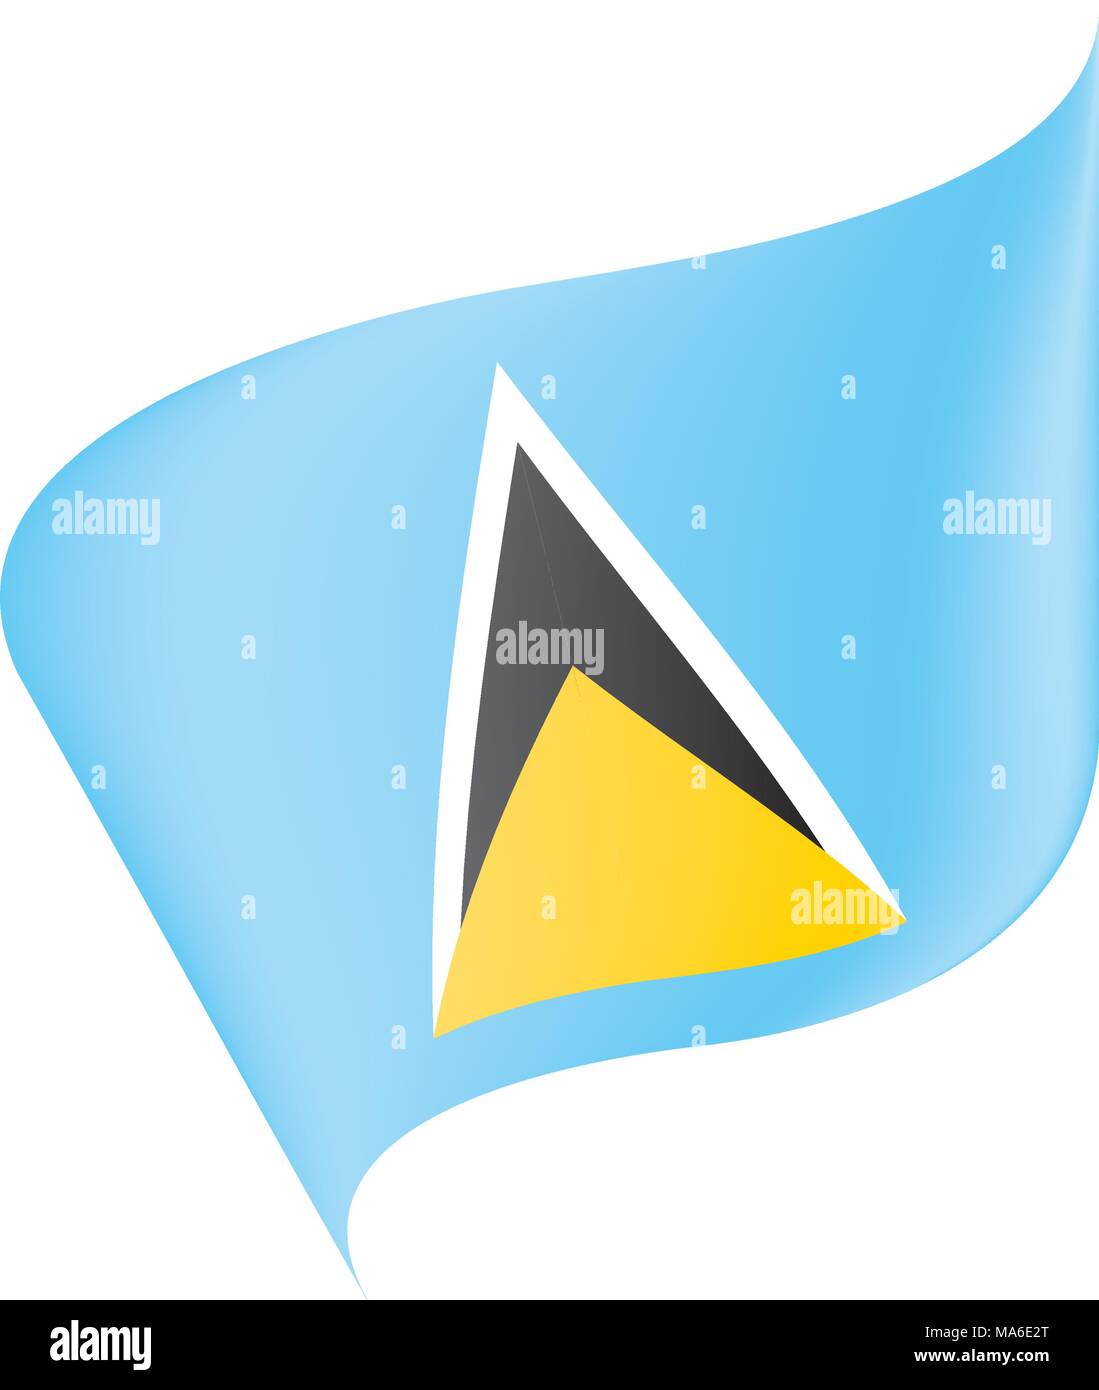 Saint Lucia flag, vector illustration Stock Vector